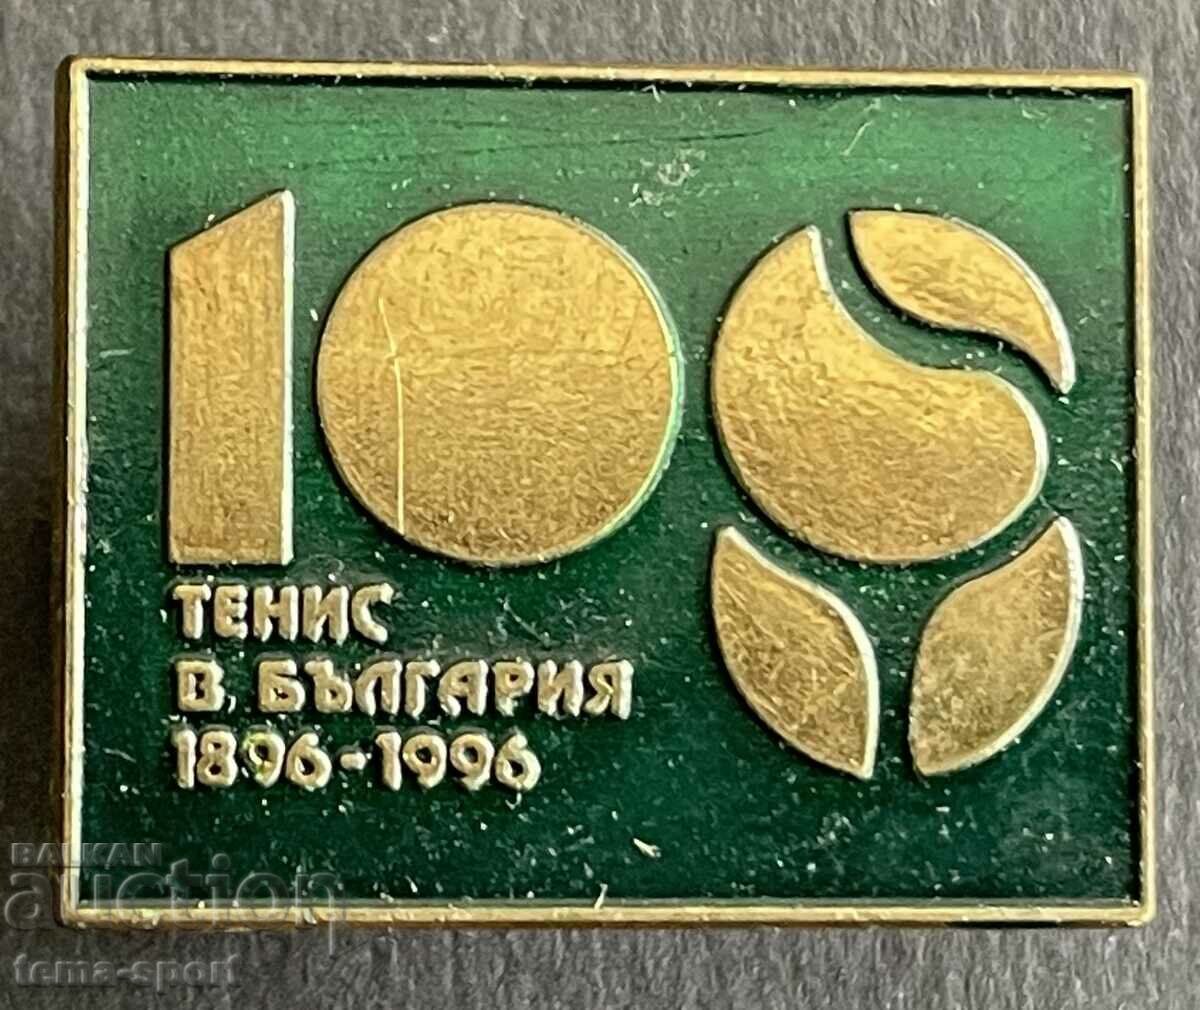 637 Βουλγαρία υπογράφει 100 χρόνια. Γήπεδο τένις στη Βουλγαρία 1996